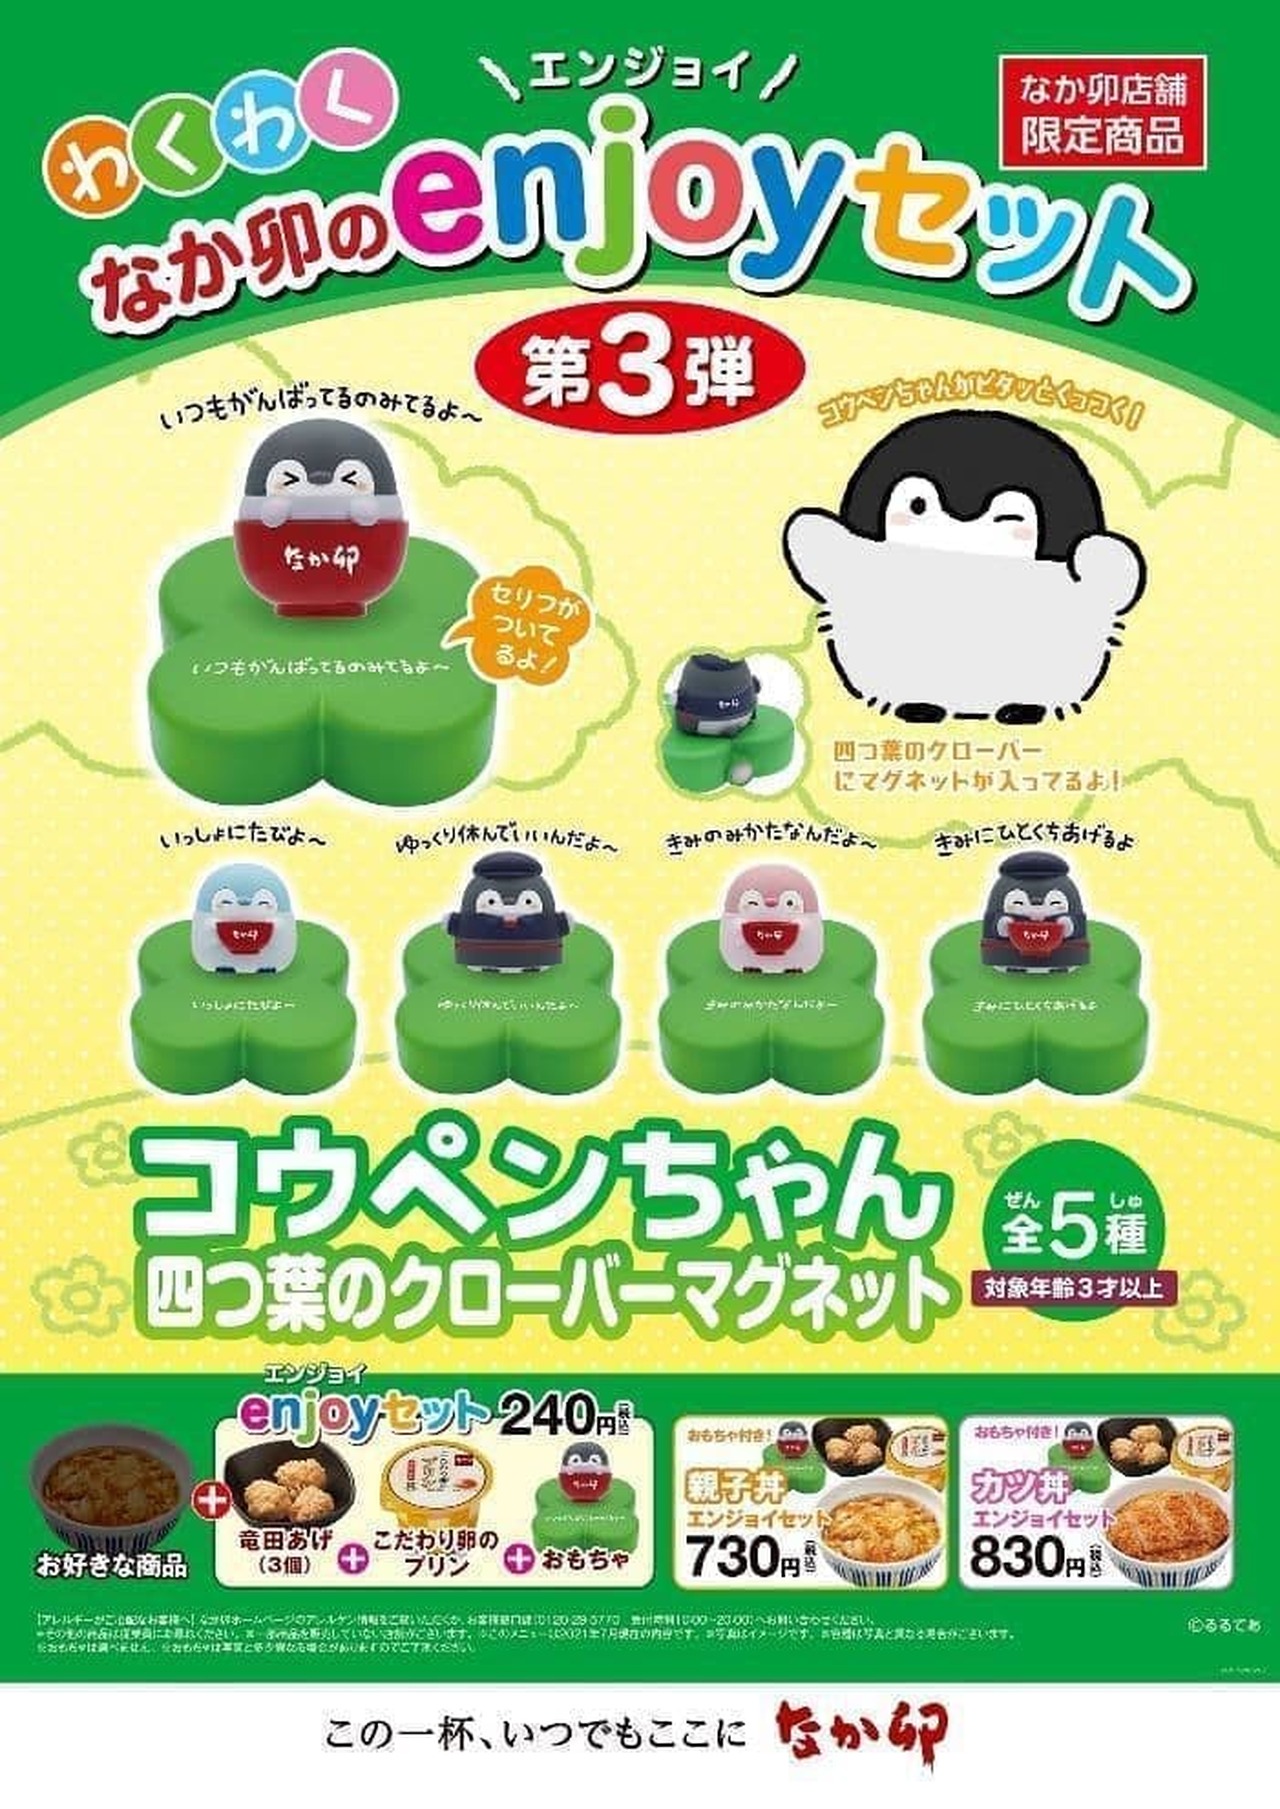 Nakau "enjoy set" 3rd "Koupen-chan four-leaf clover magnet"